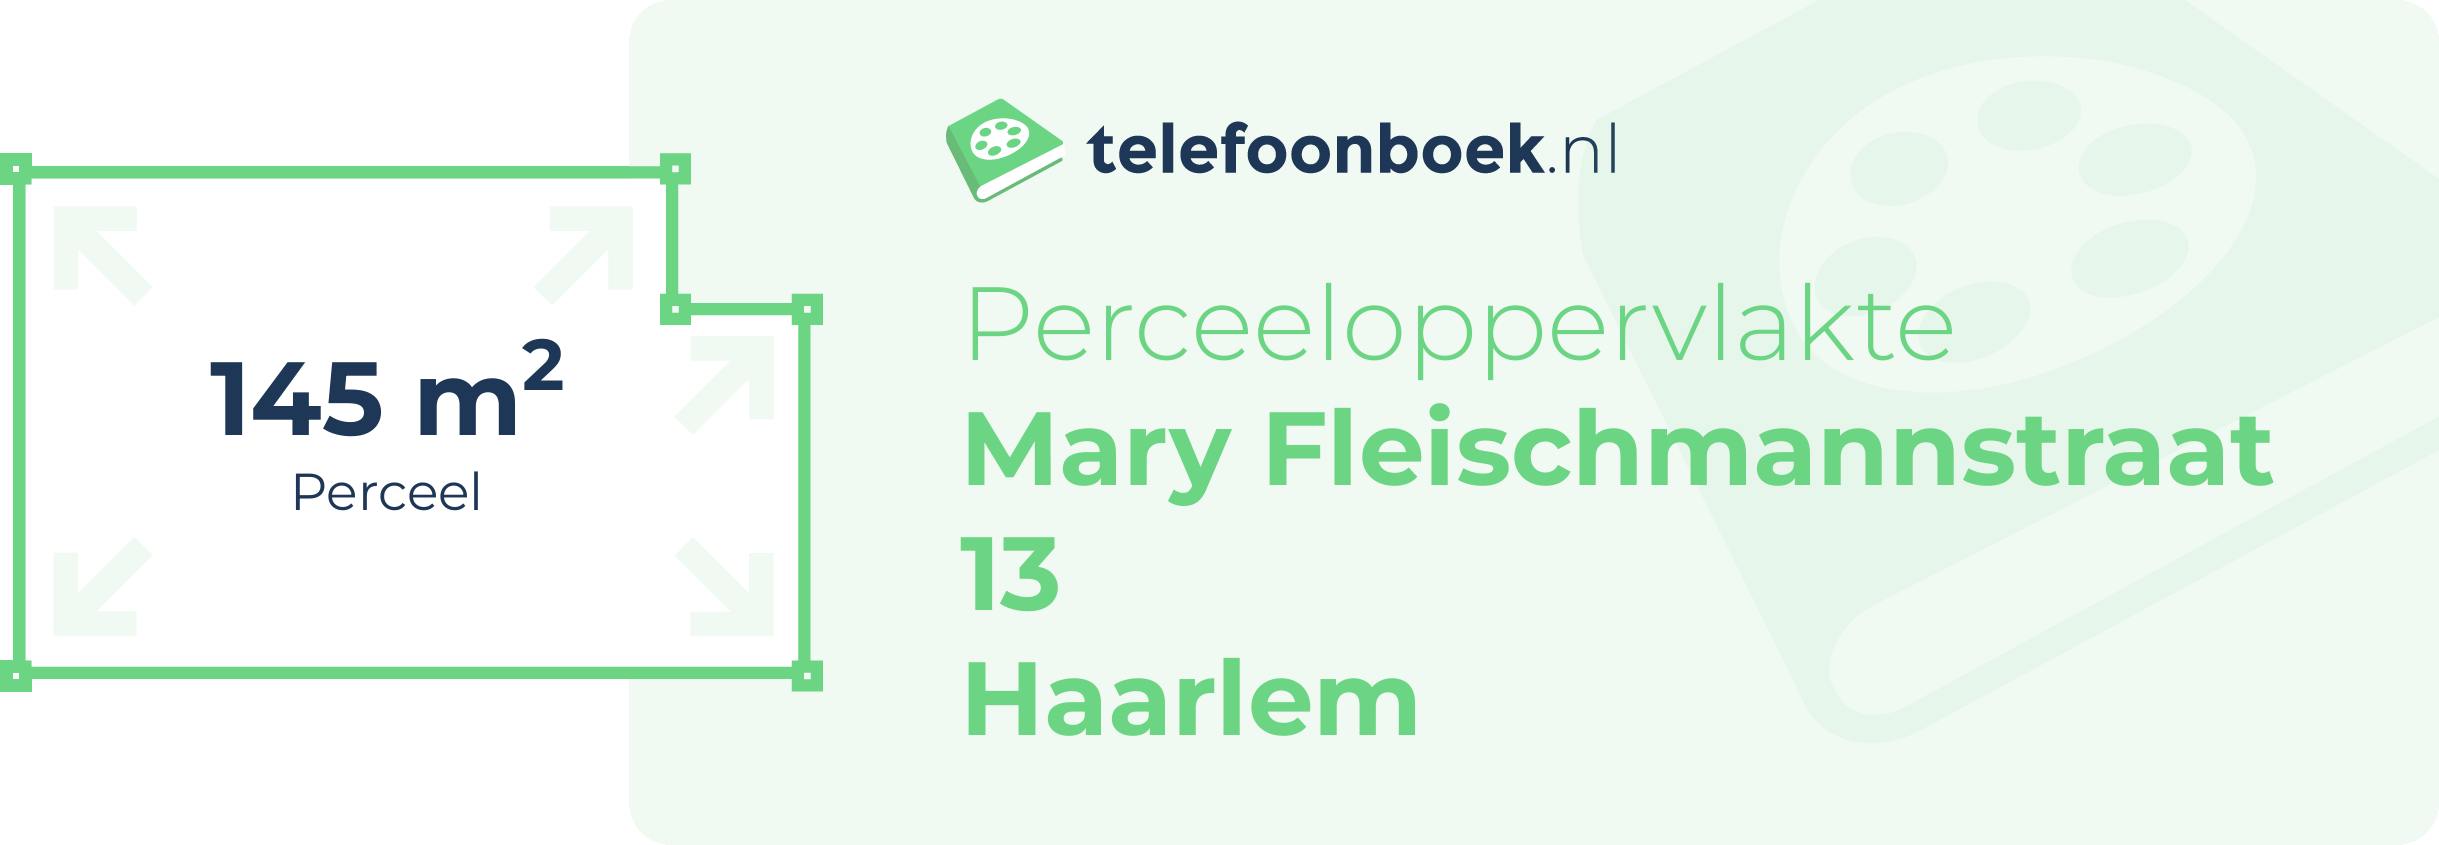 Perceeloppervlakte Mary Fleischmannstraat 13 Haarlem